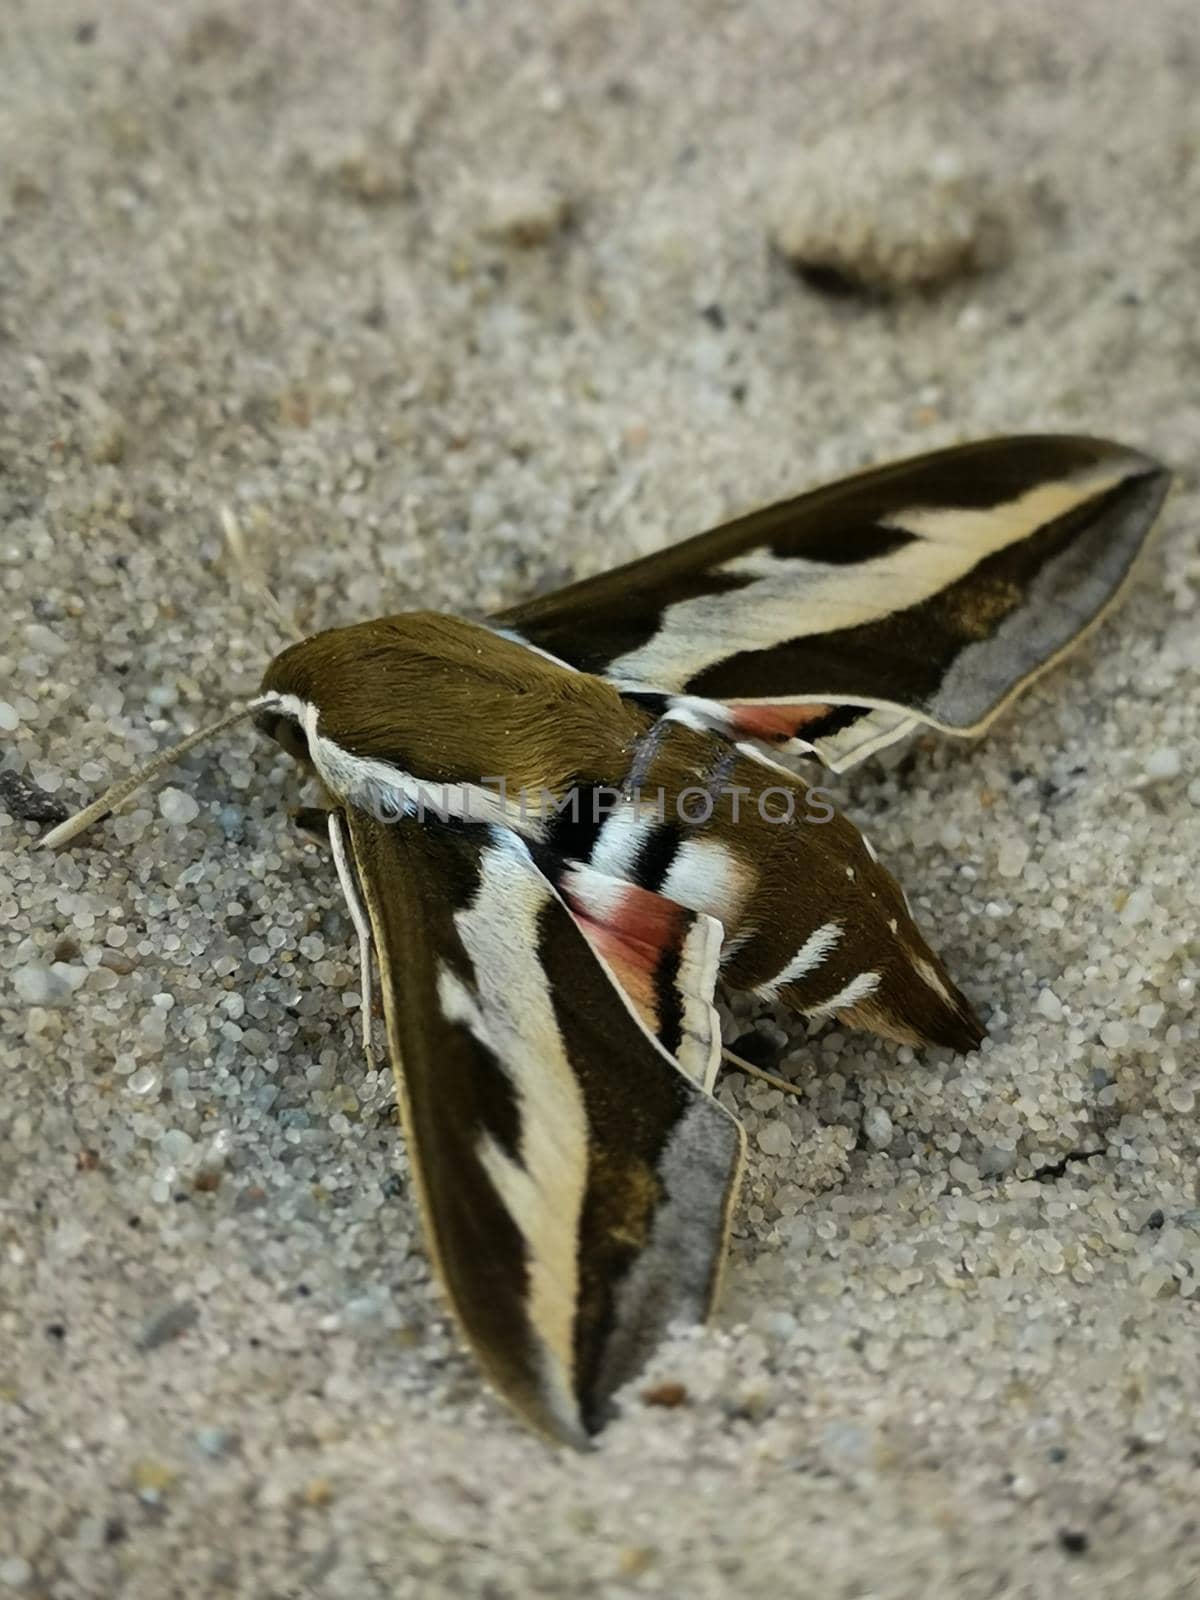 Closeup shot of a bedstraw hawk-moth on sand by wektorygrafika